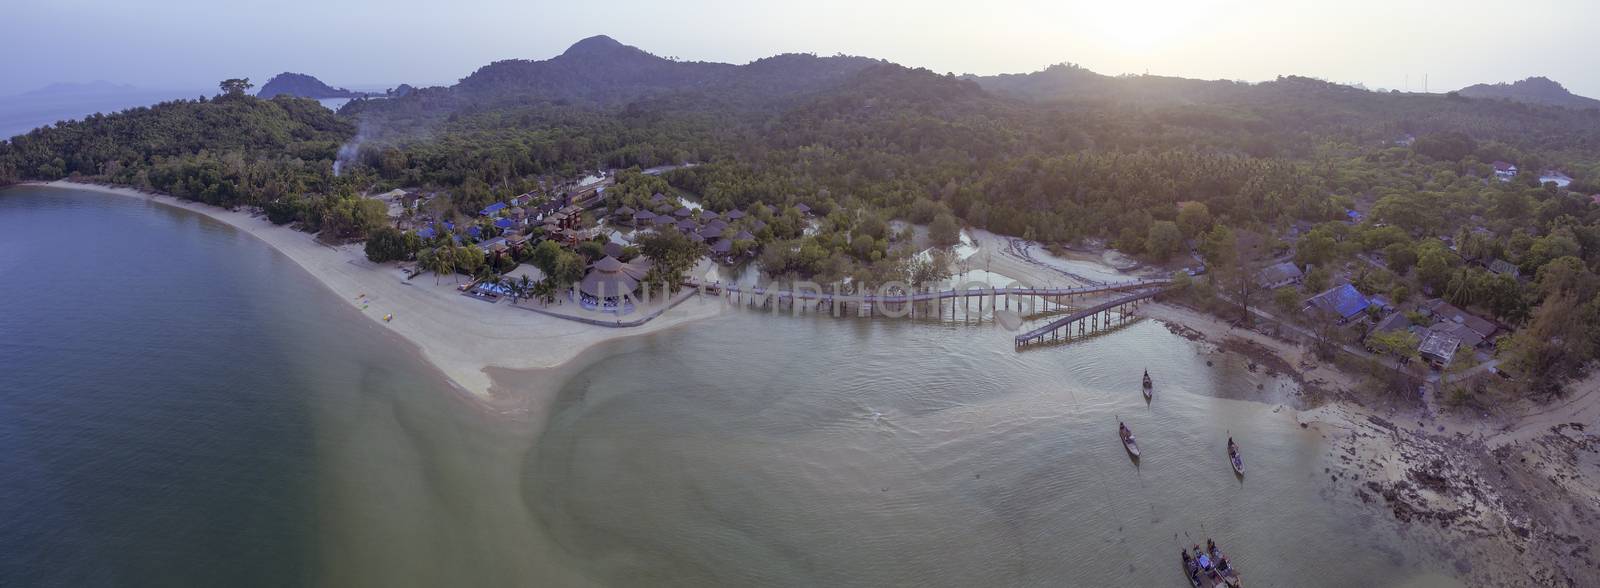 aerial view of koh payam island ranong southern of thailand by khunaspix